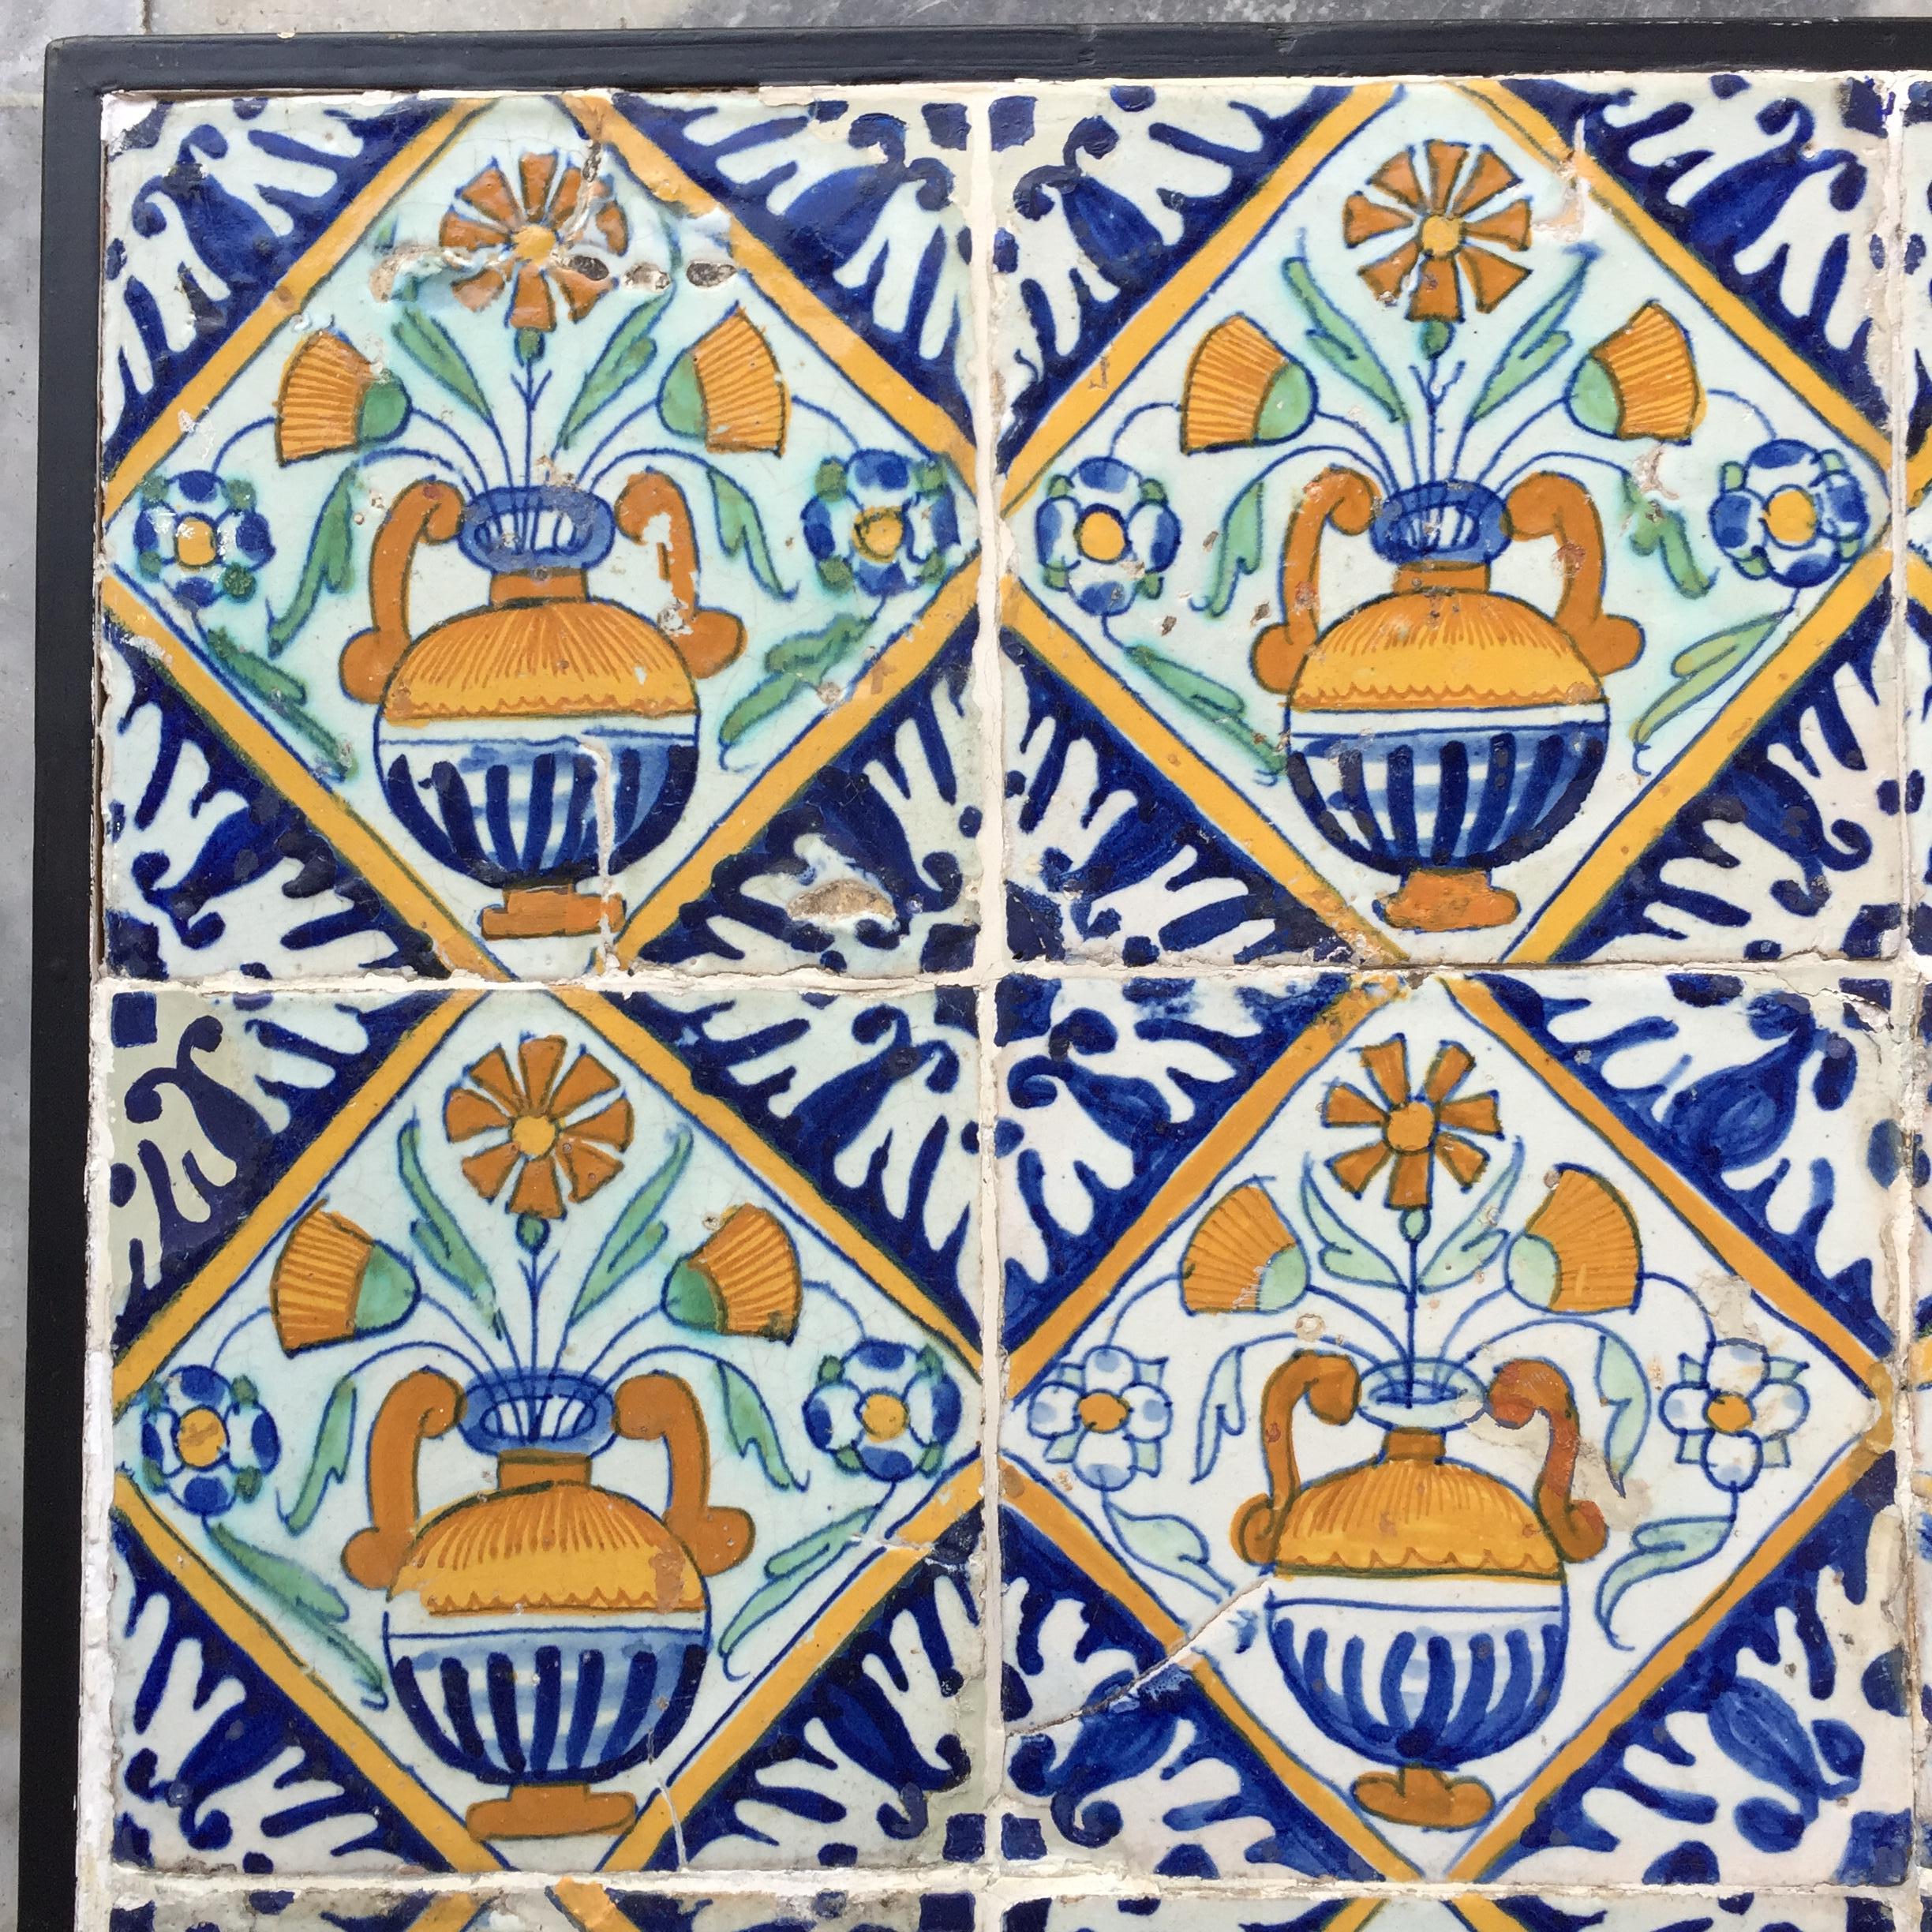 Un ensemble de 9 carreaux de Delft néerlandais polychromes avec des vases de fleurs. 
Fabriqué aux Pays-Bas.
Circa 1600 - 1620.

Un merveilleux ensemble de 9 carreaux avec des vases de fleurs peints dans un quadrant ou un diamant.
Des carreaux